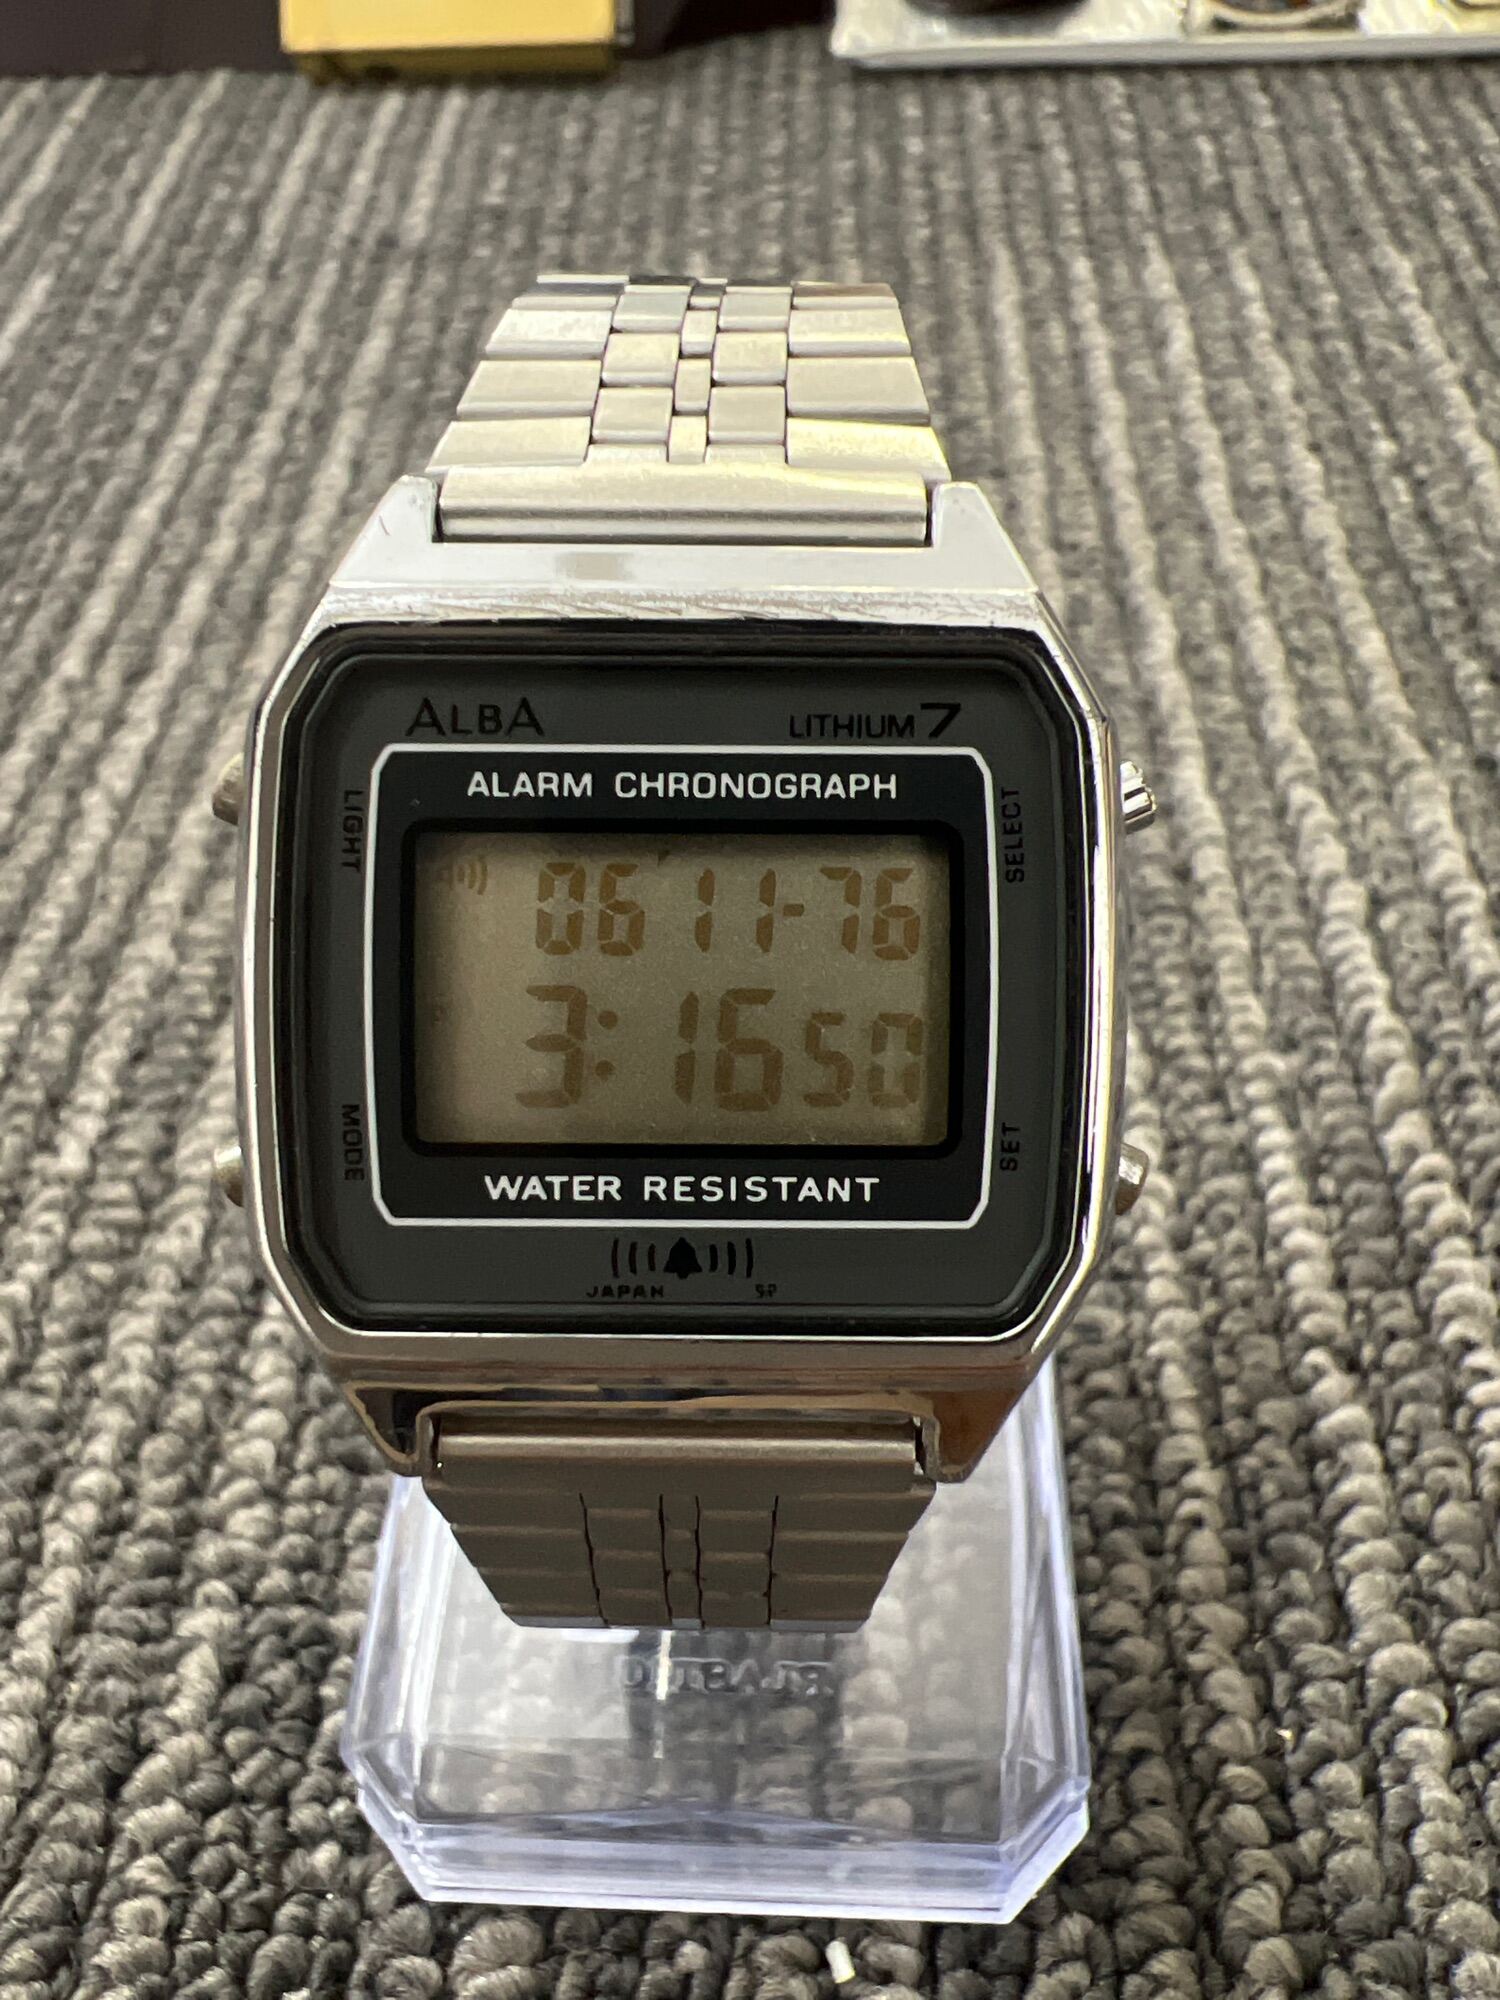 Đồng hồ Digital Allba Alarm chronograph, đã qua sử dụng mới 98% 